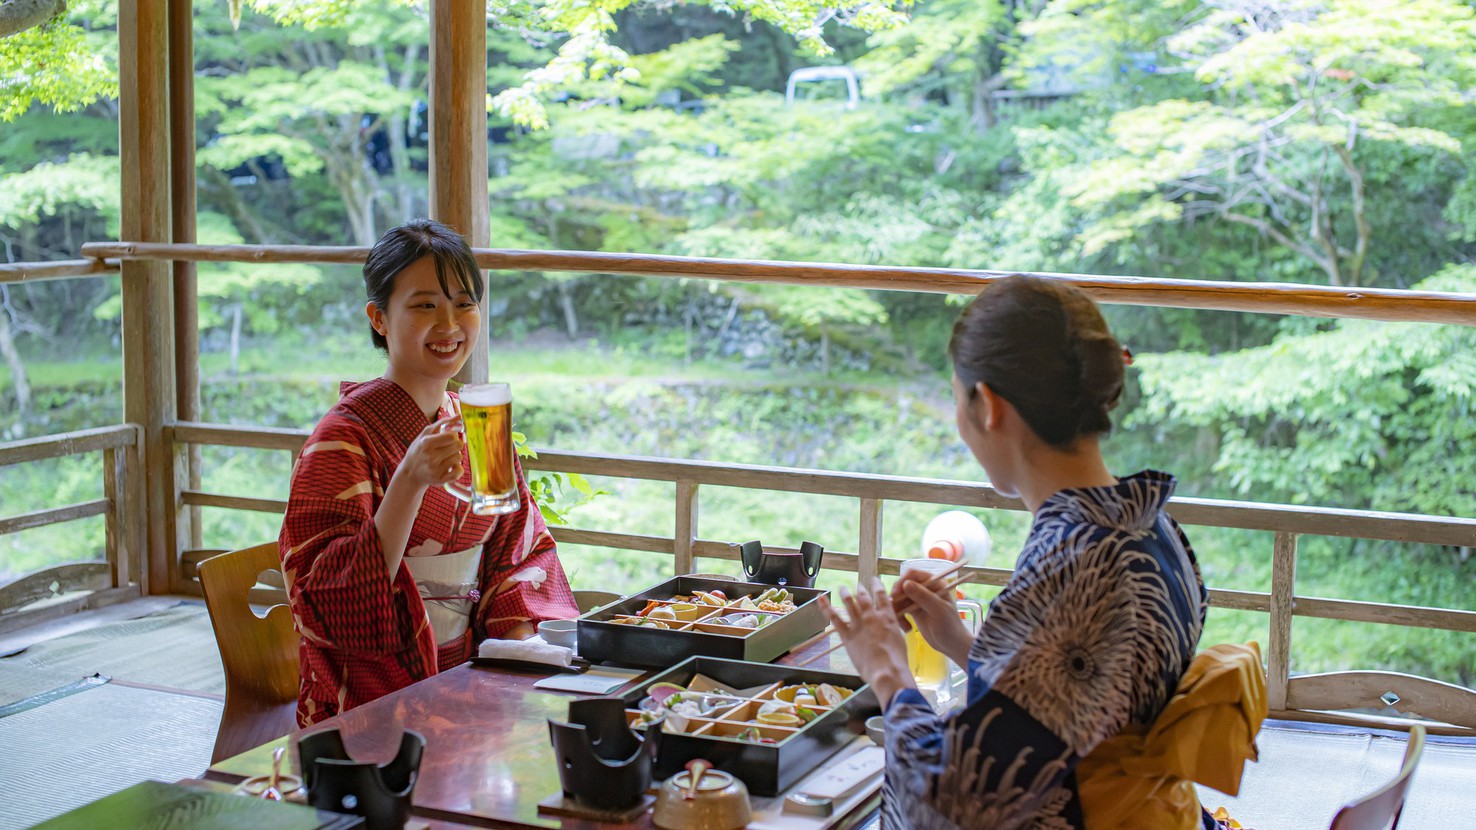 【川床プラン】京都高雄で味わう川床料理ご夕食プラン -夕食・和洋選べるこだわり朝食付き-